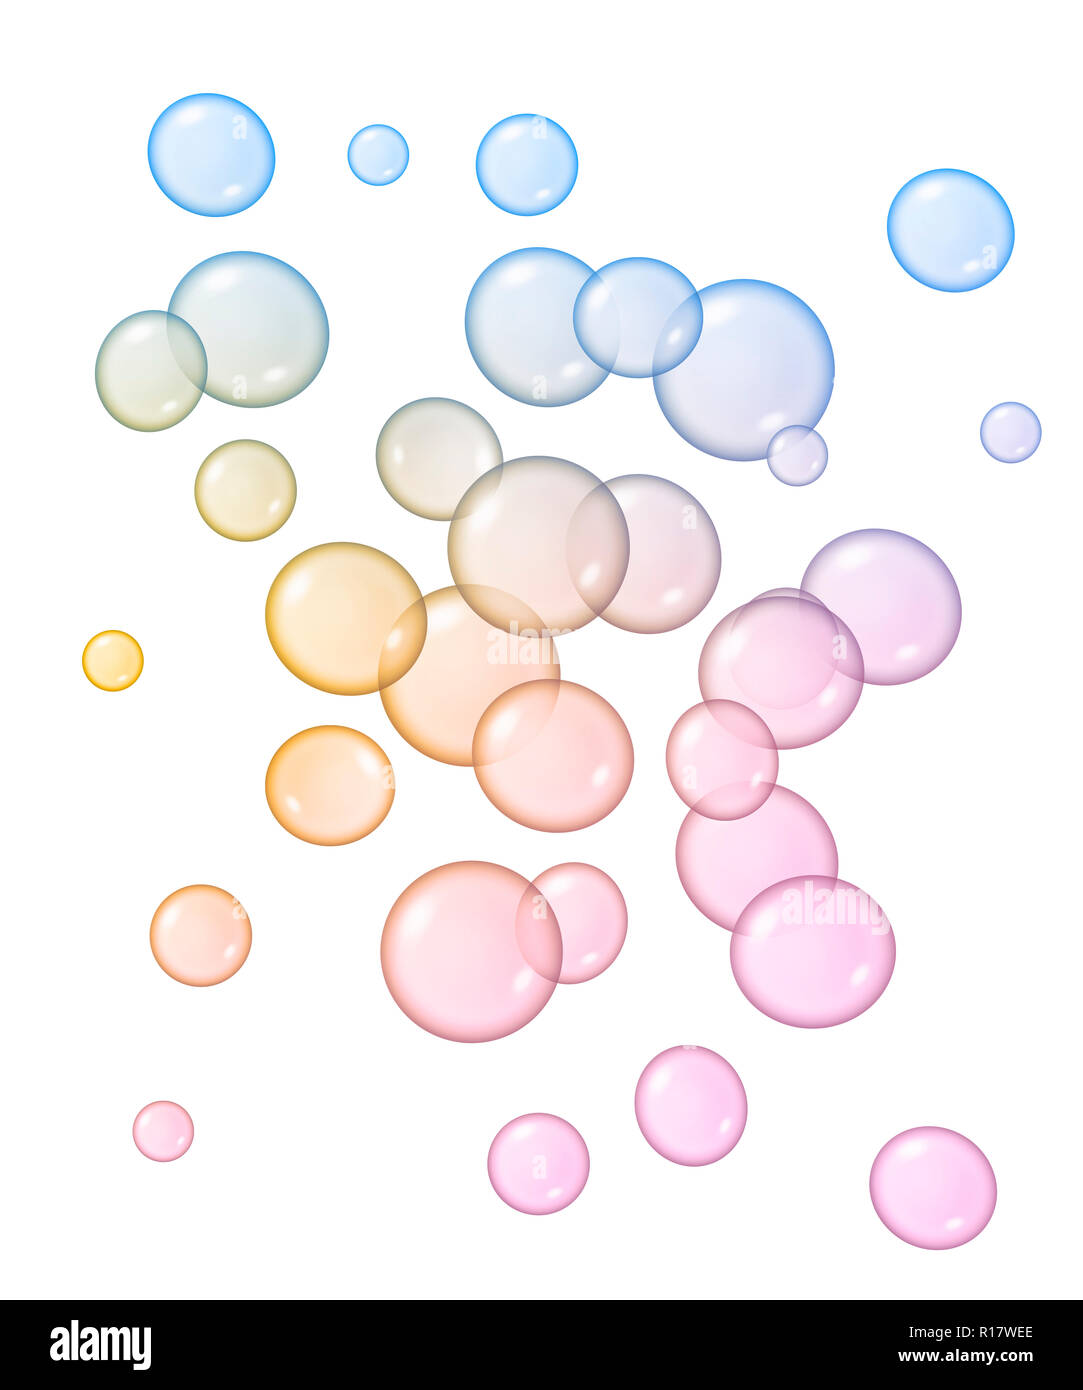 Digitales Bild von Blau, Rosa und Gelb Blasen in verschiedenen Größen floating, weißer Hintergrund Stockfoto